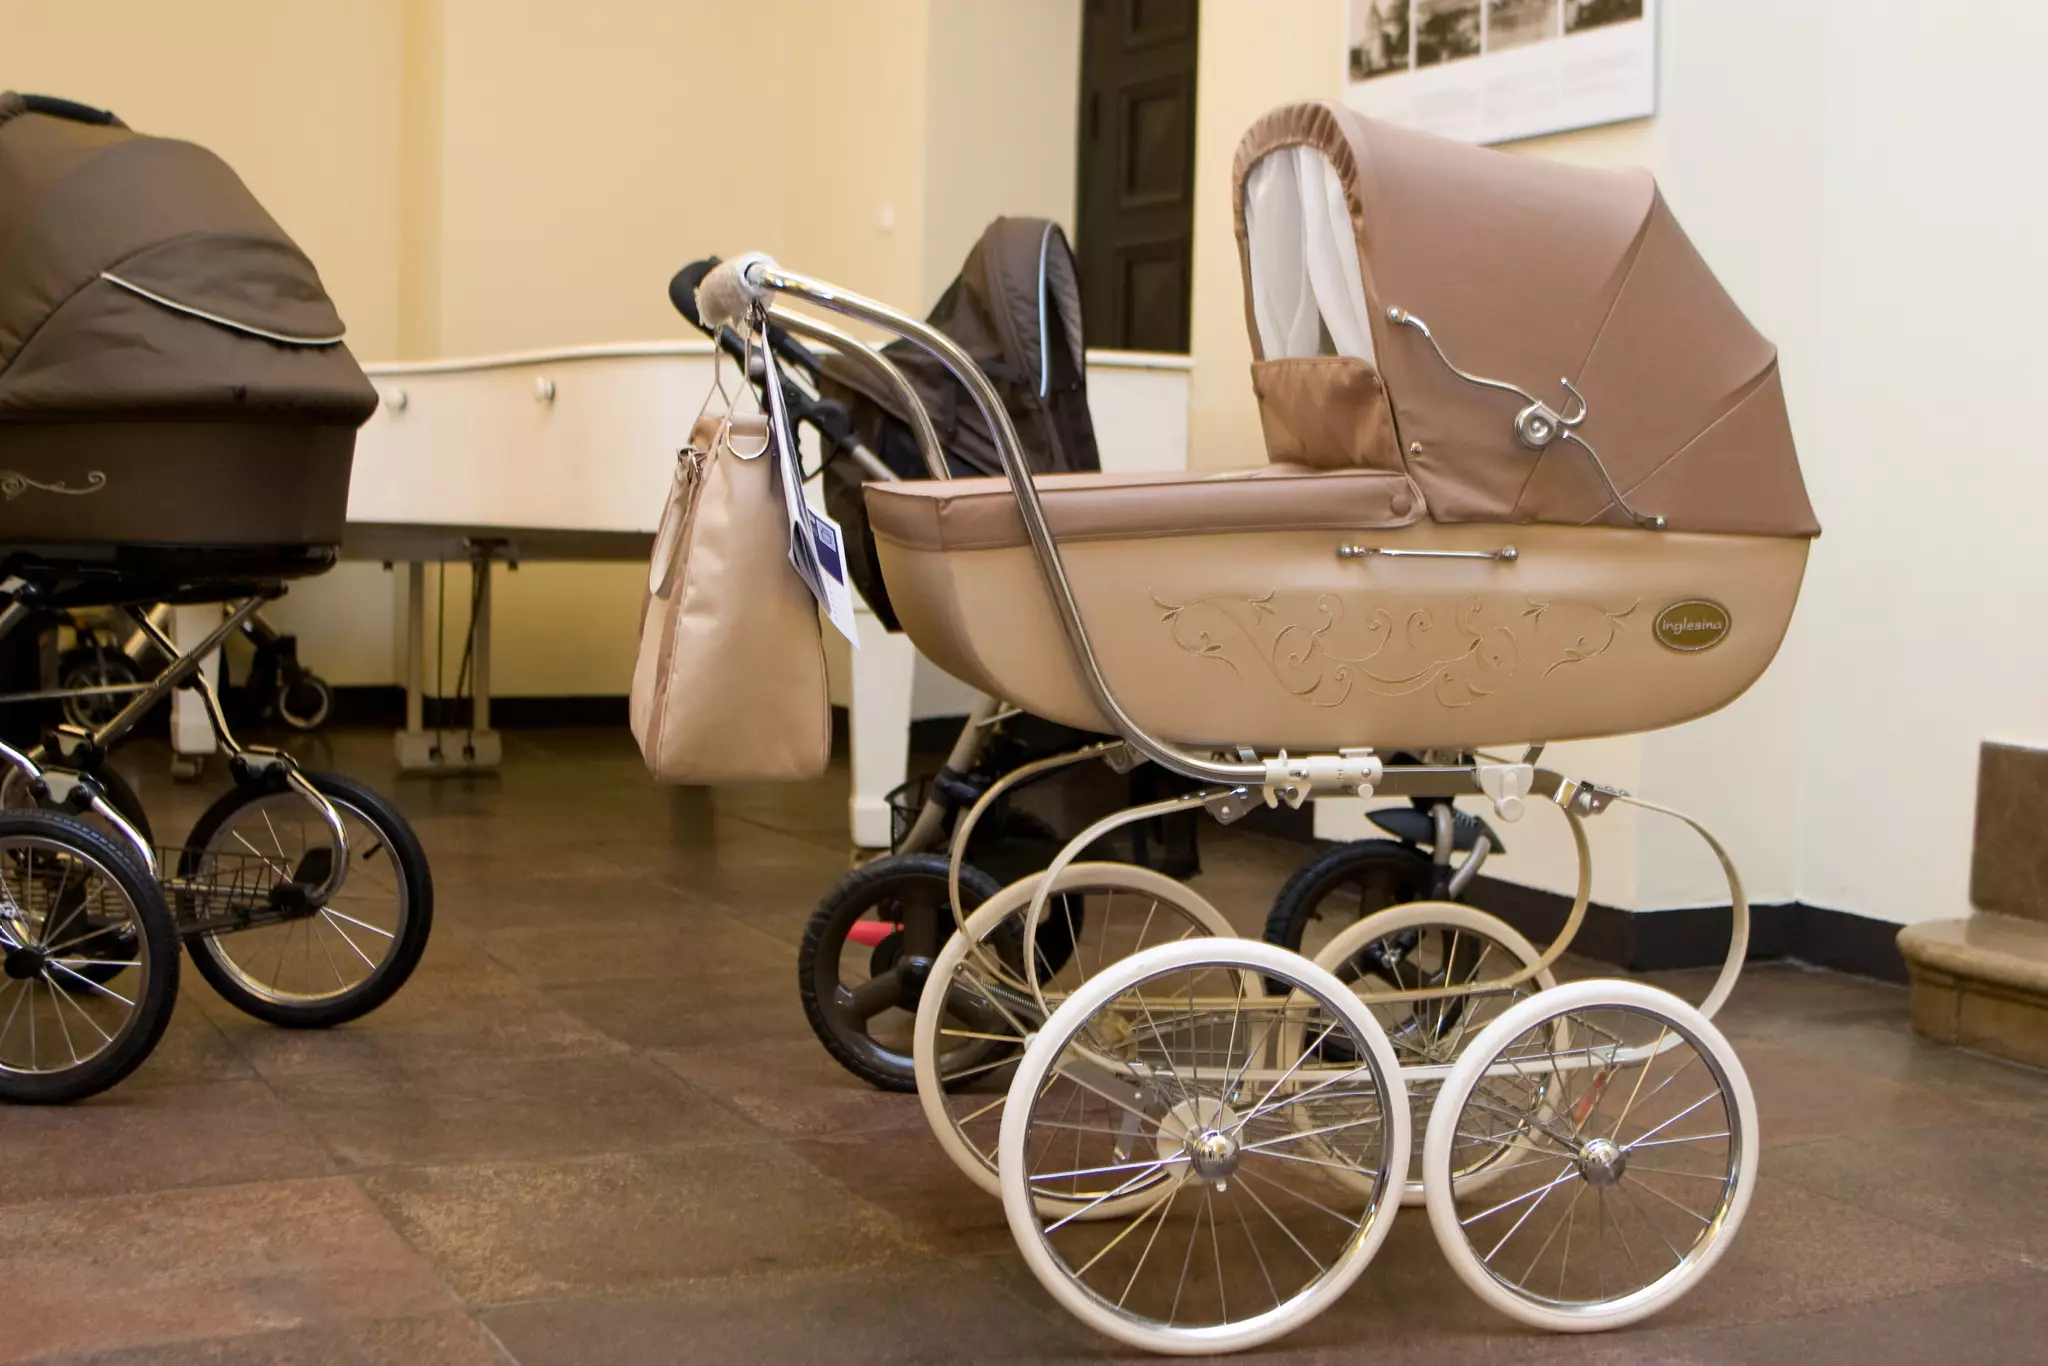 Marijampolė kviečia į Šeimų šventę: vaikų vežimėlių slalomu skatins gimstamumą